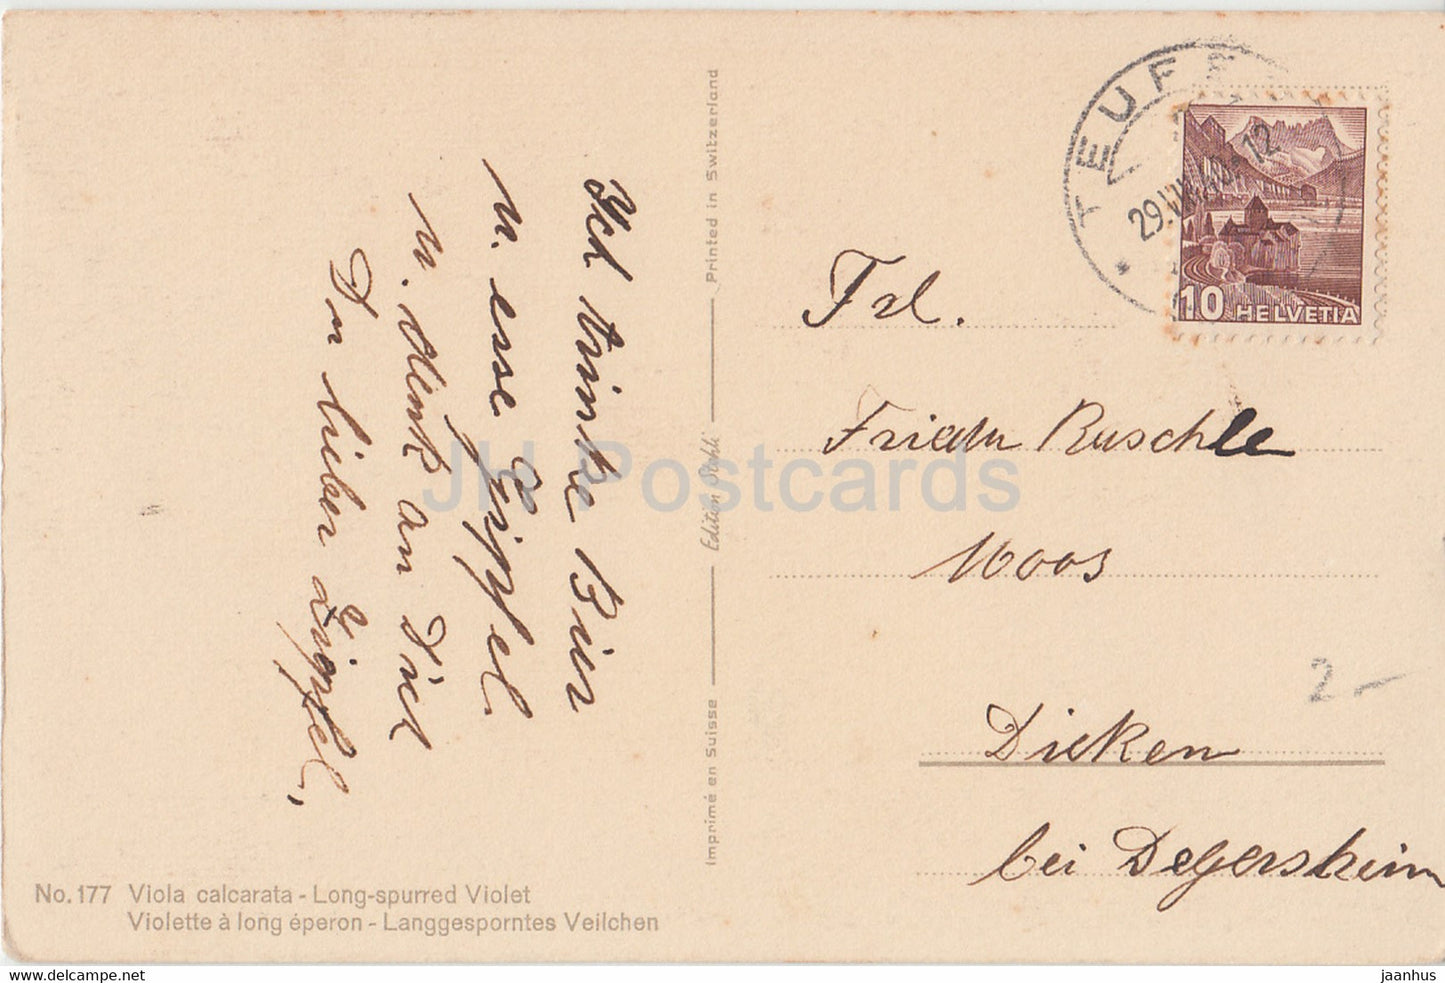 Viola Calcarata - Long Spurred Violet - Langgesprontes Veilchen flowers - 177 - old postcard - 1940 - Switzerland - used